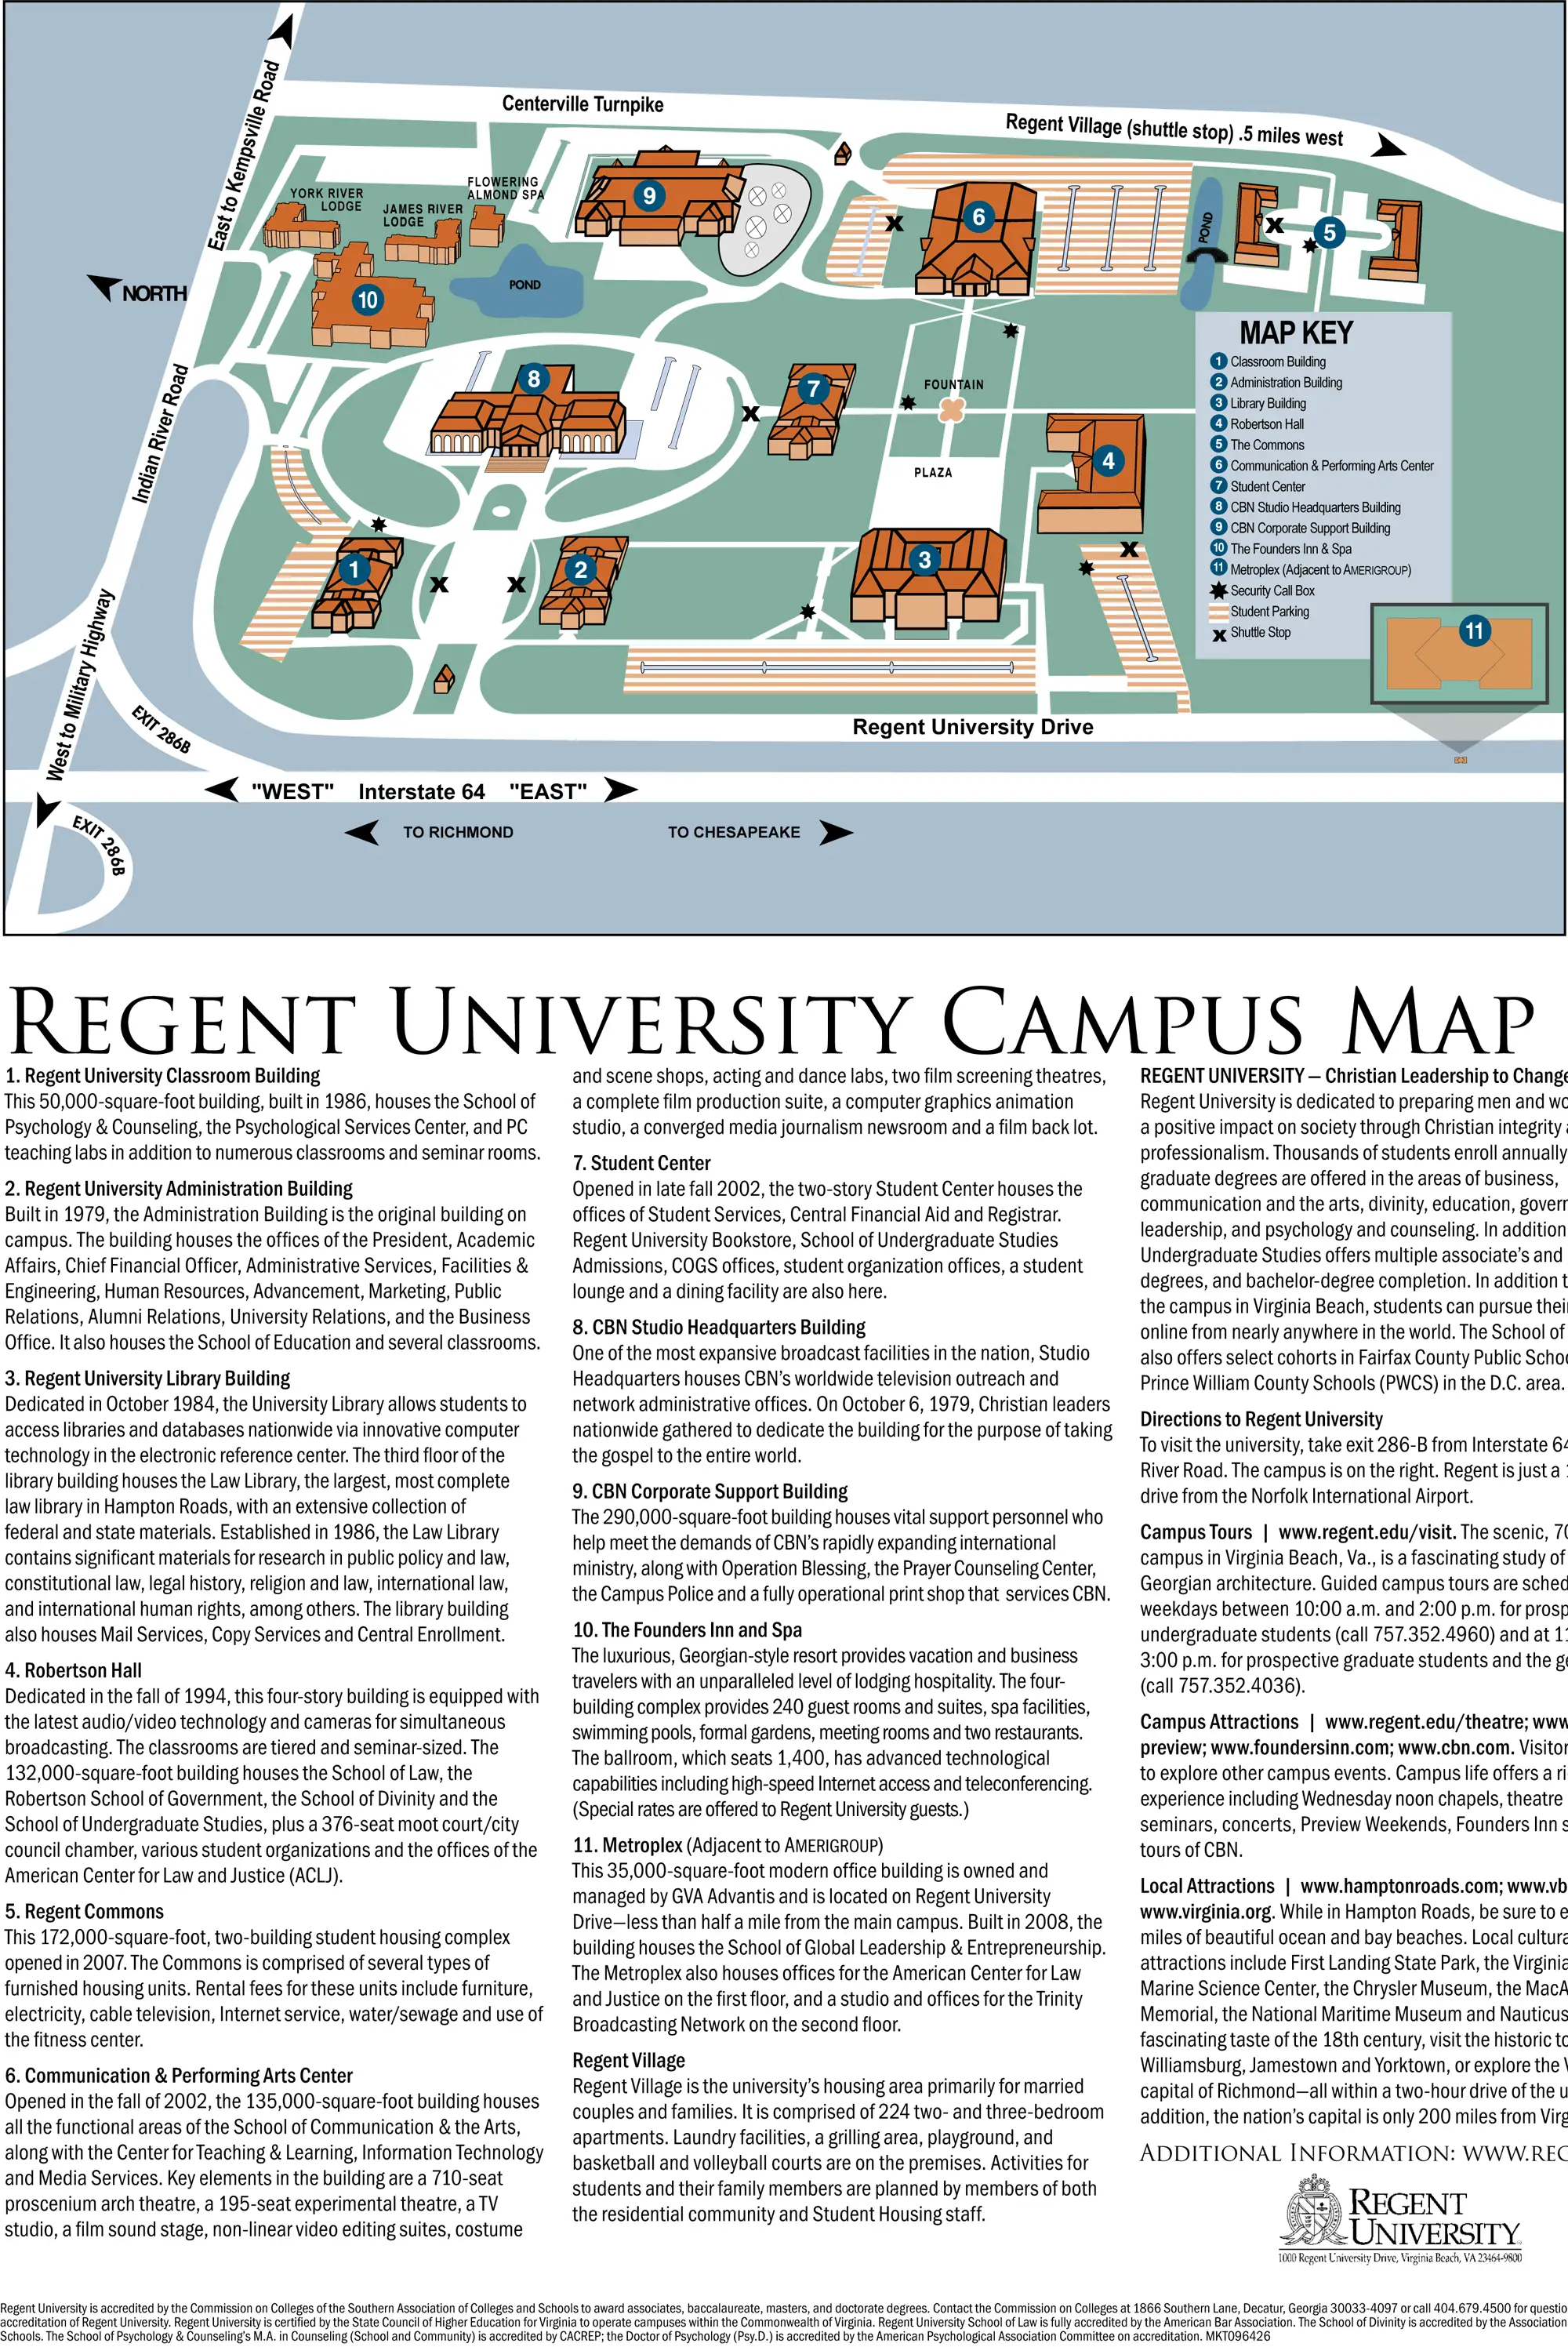 Regent University Campus Map